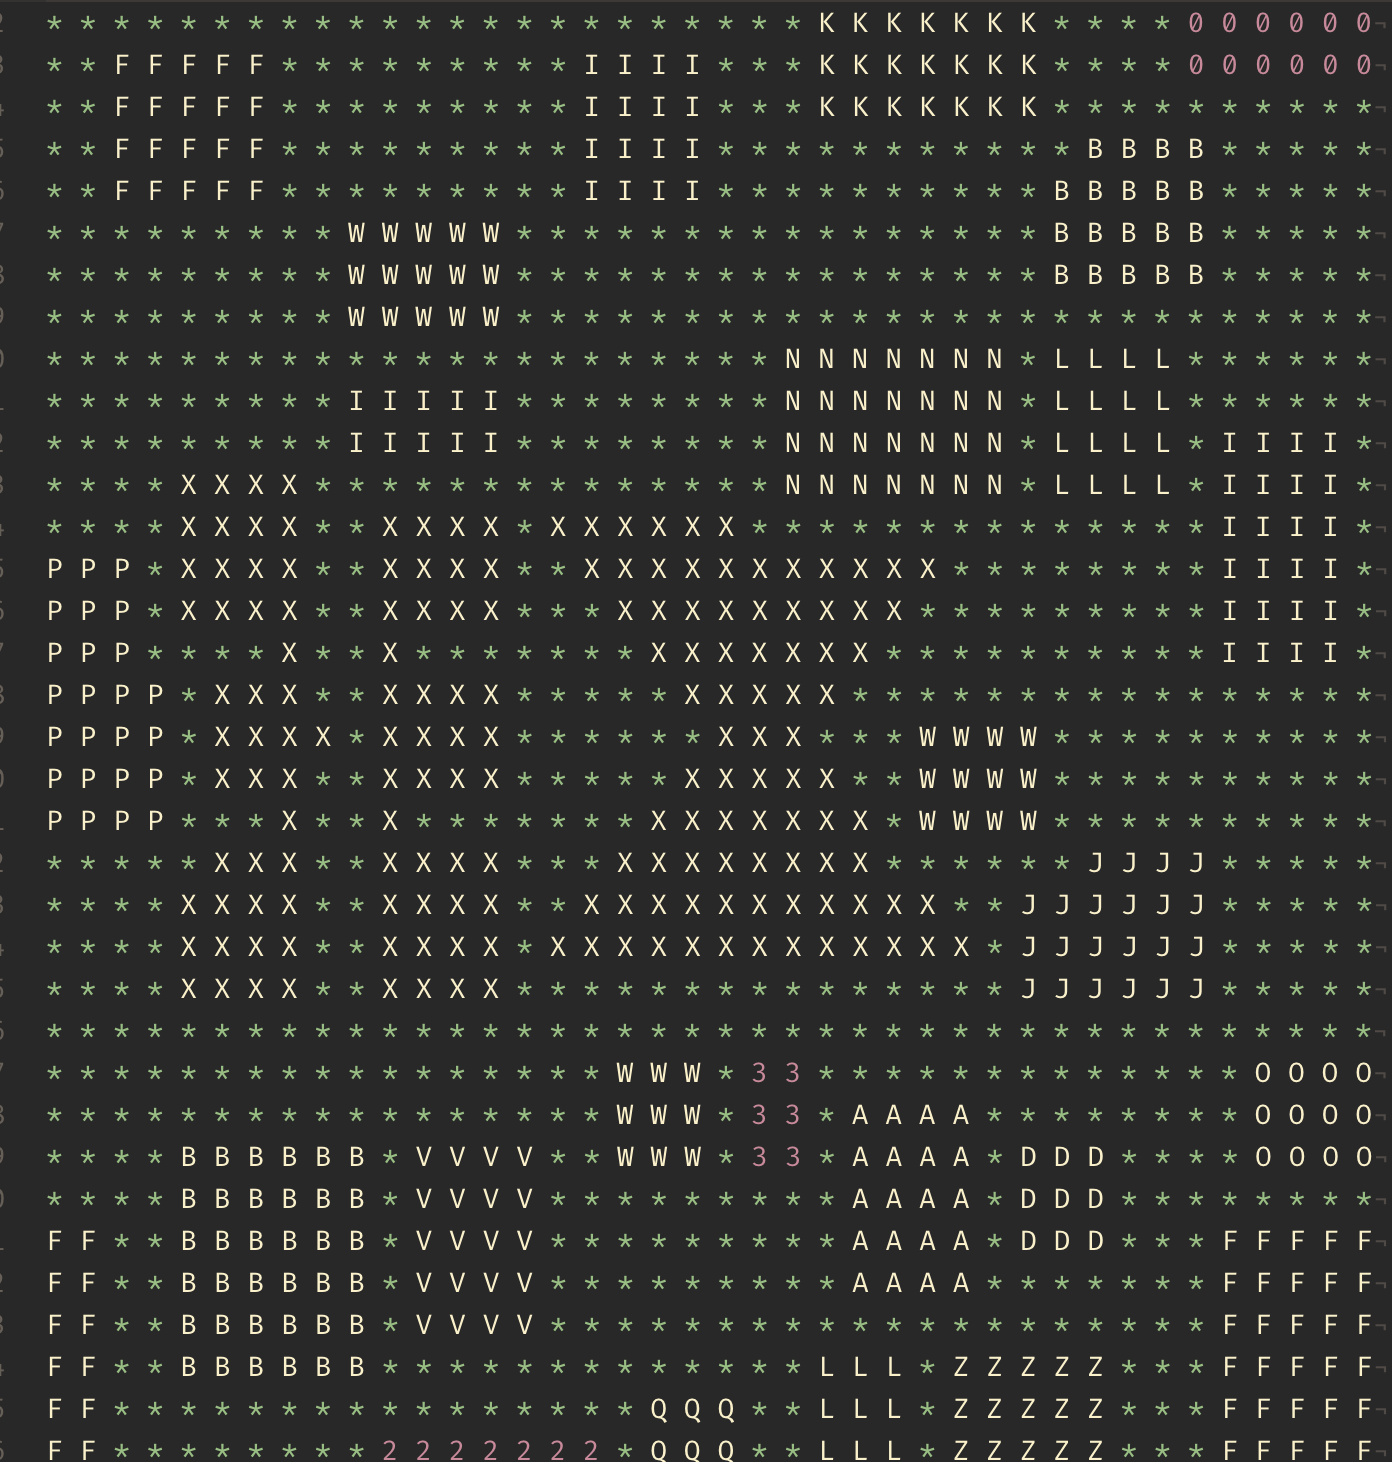 Generated ASCII Source